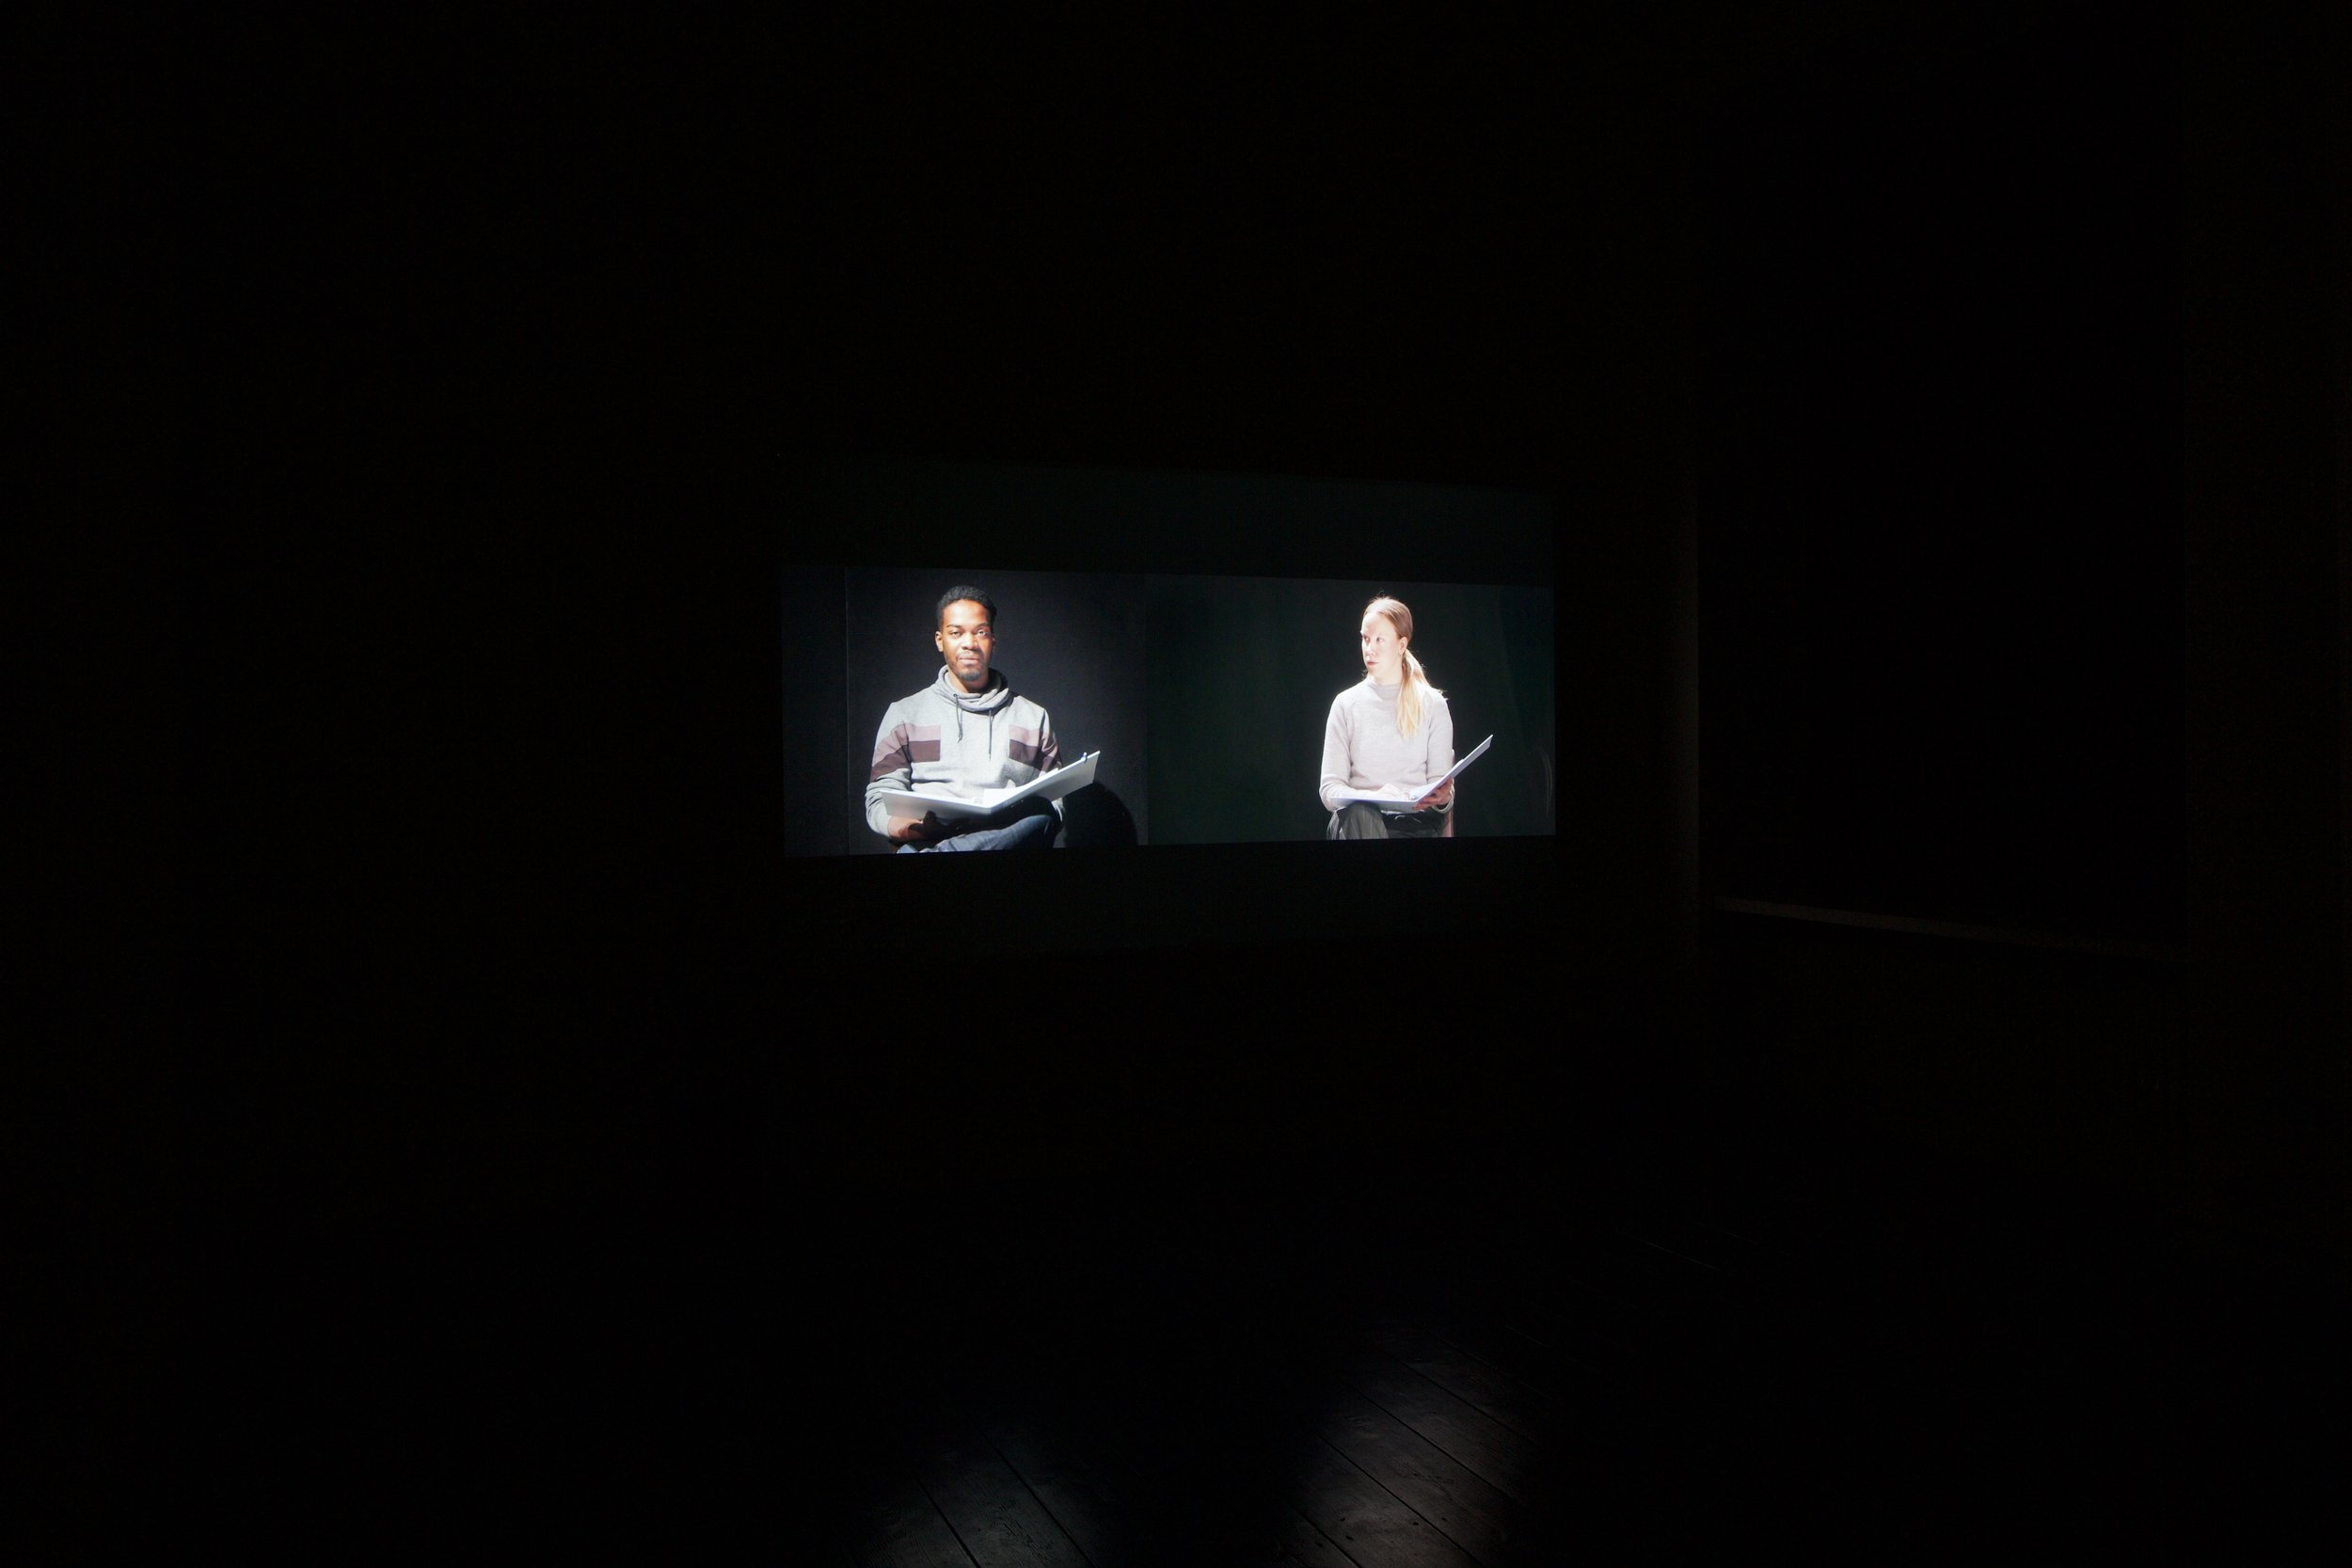 Juliane Zelwies: Reading Out Loud, two channel video installation, 2021, 54:30 min